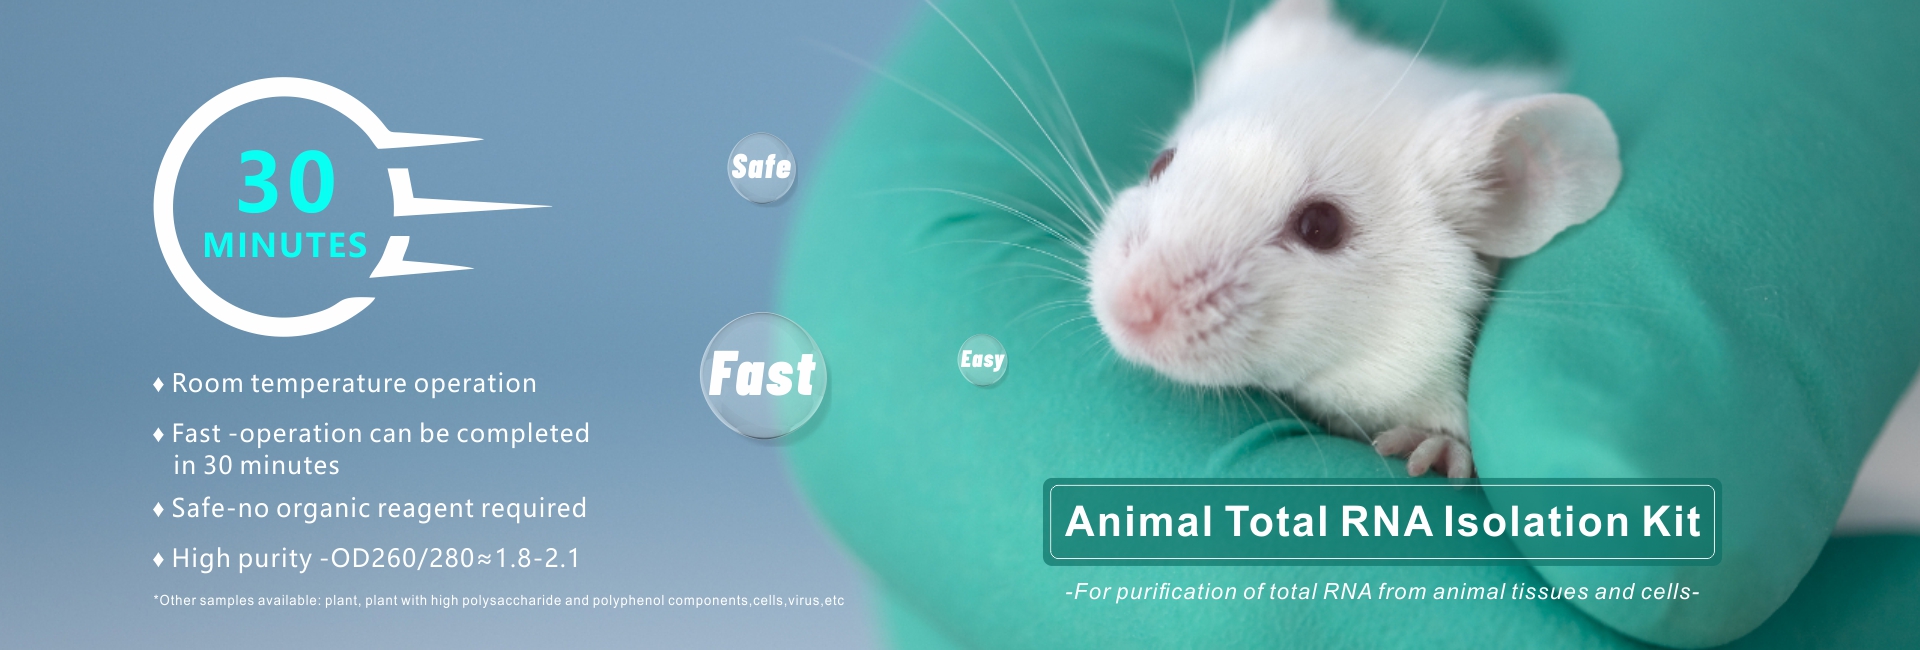 animal total RNA isolation kit --banner